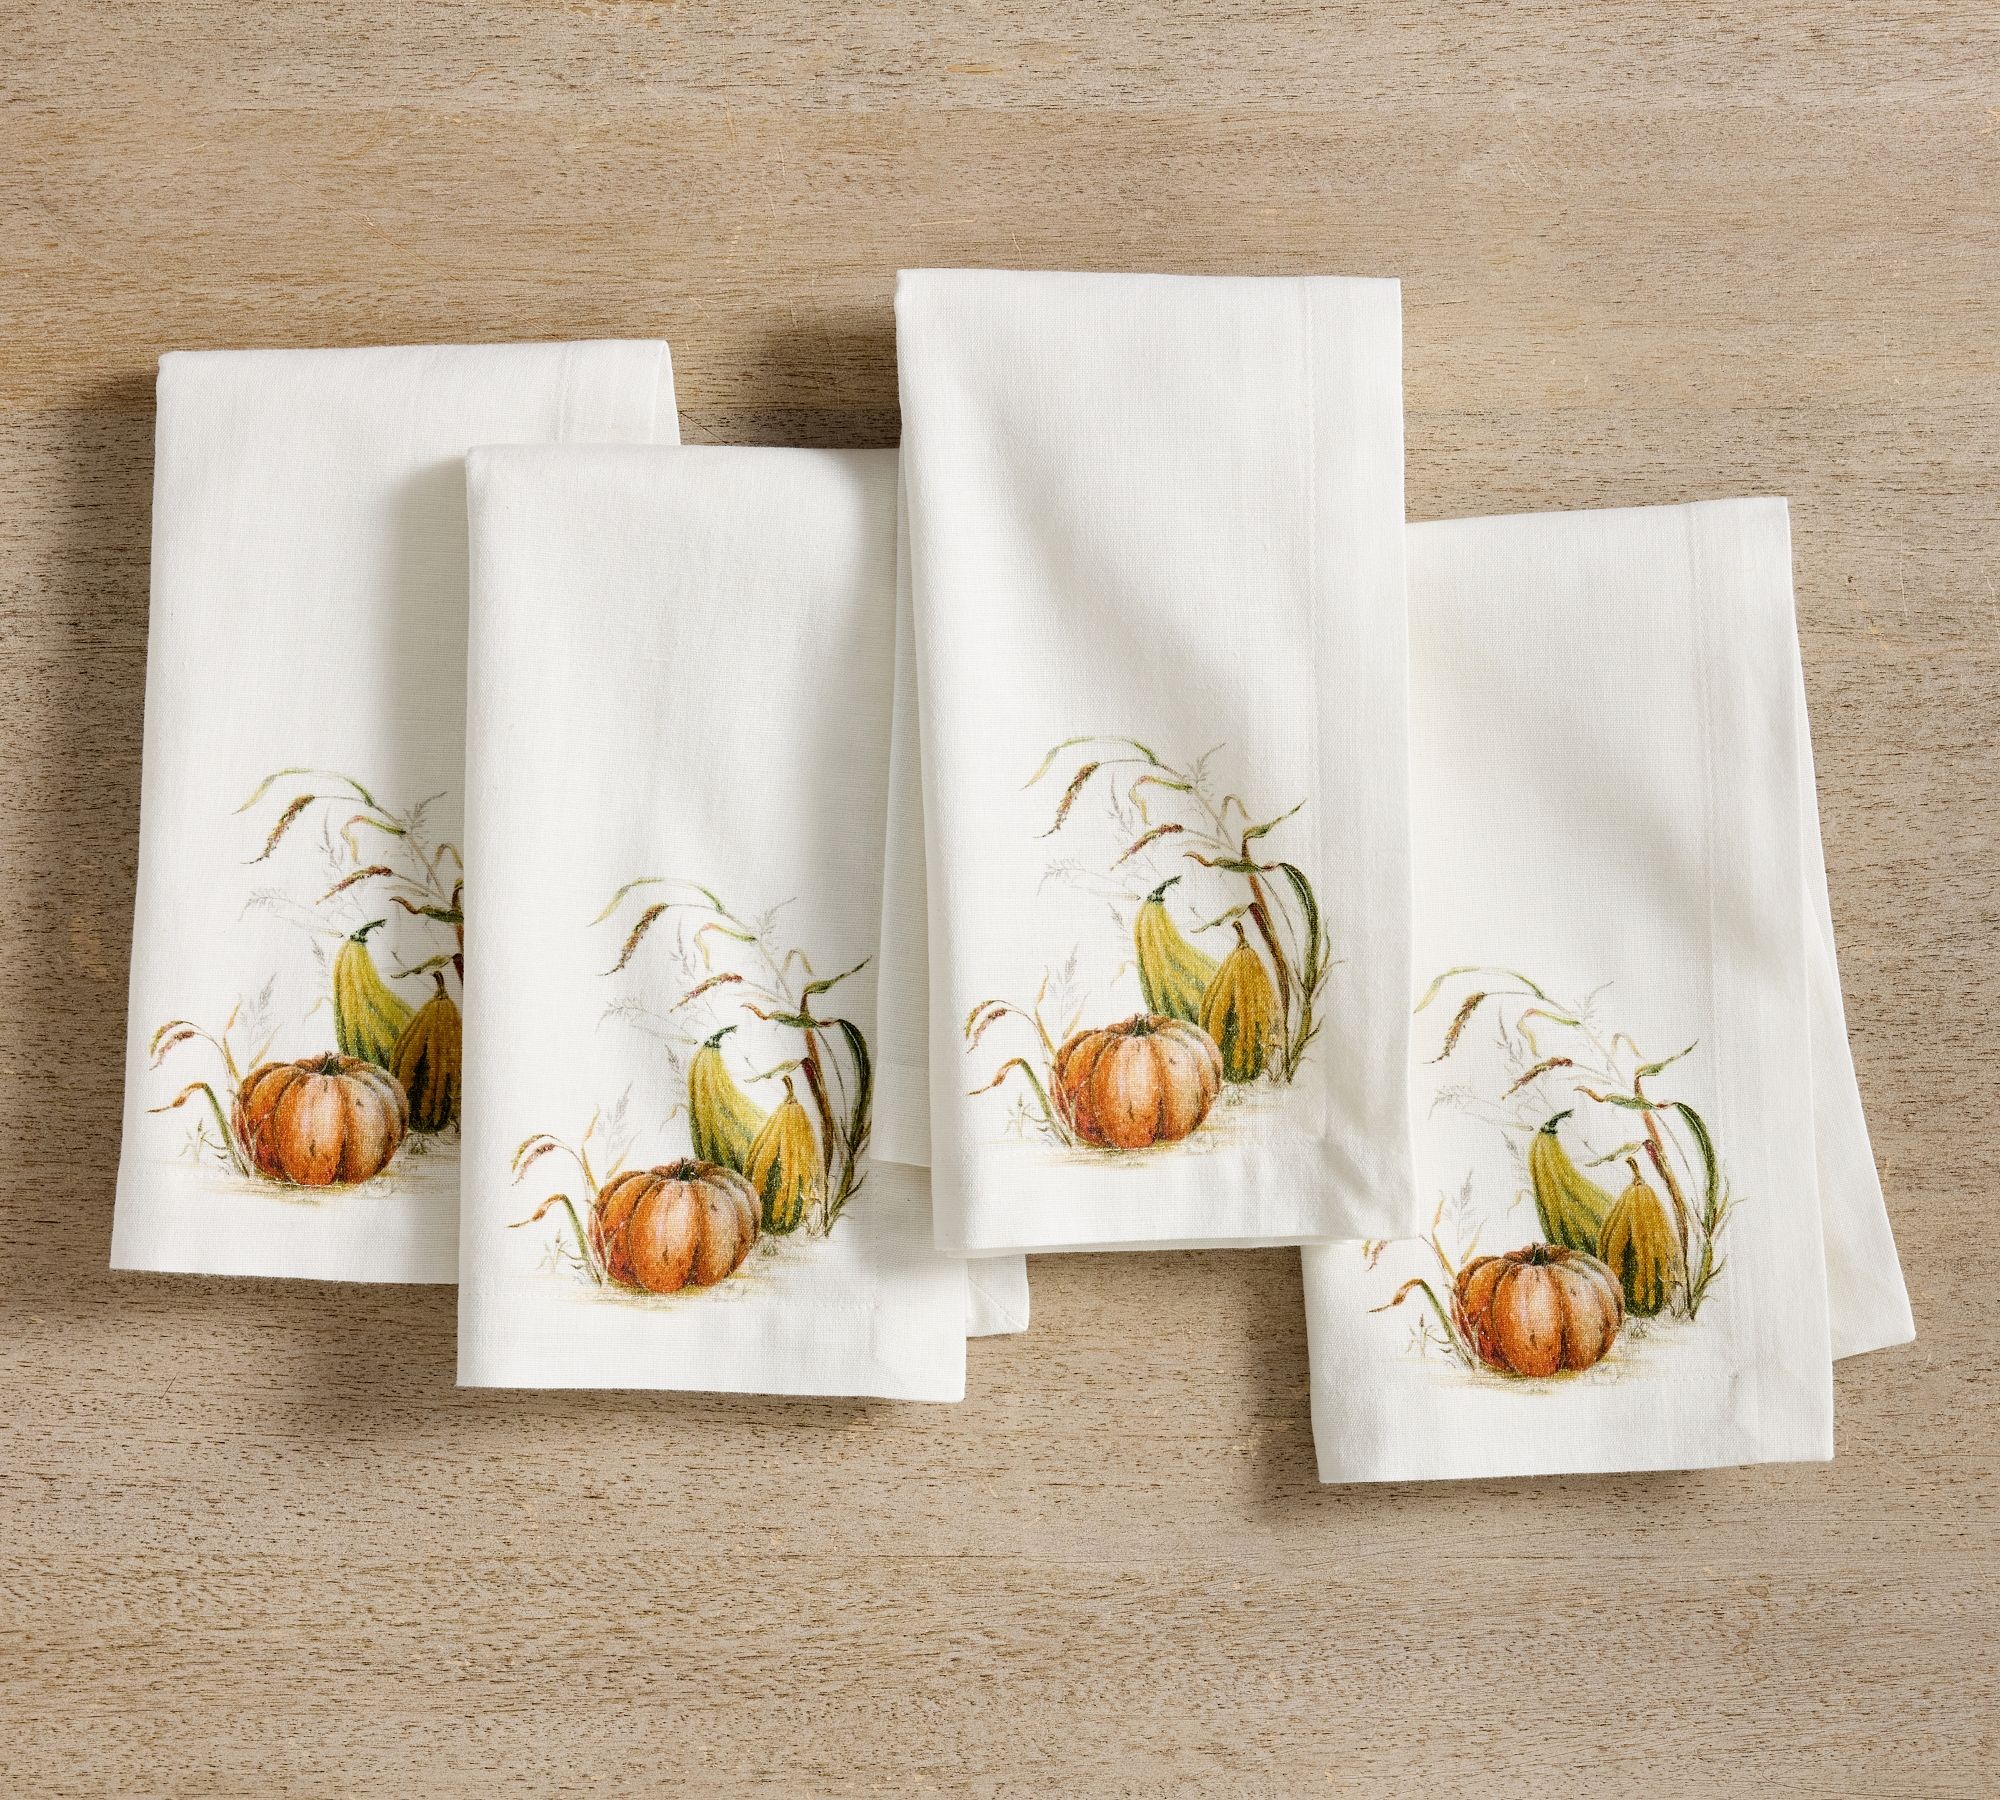 Bedford Harvest Gourd Cotton/Linen Napkins - Set of 4